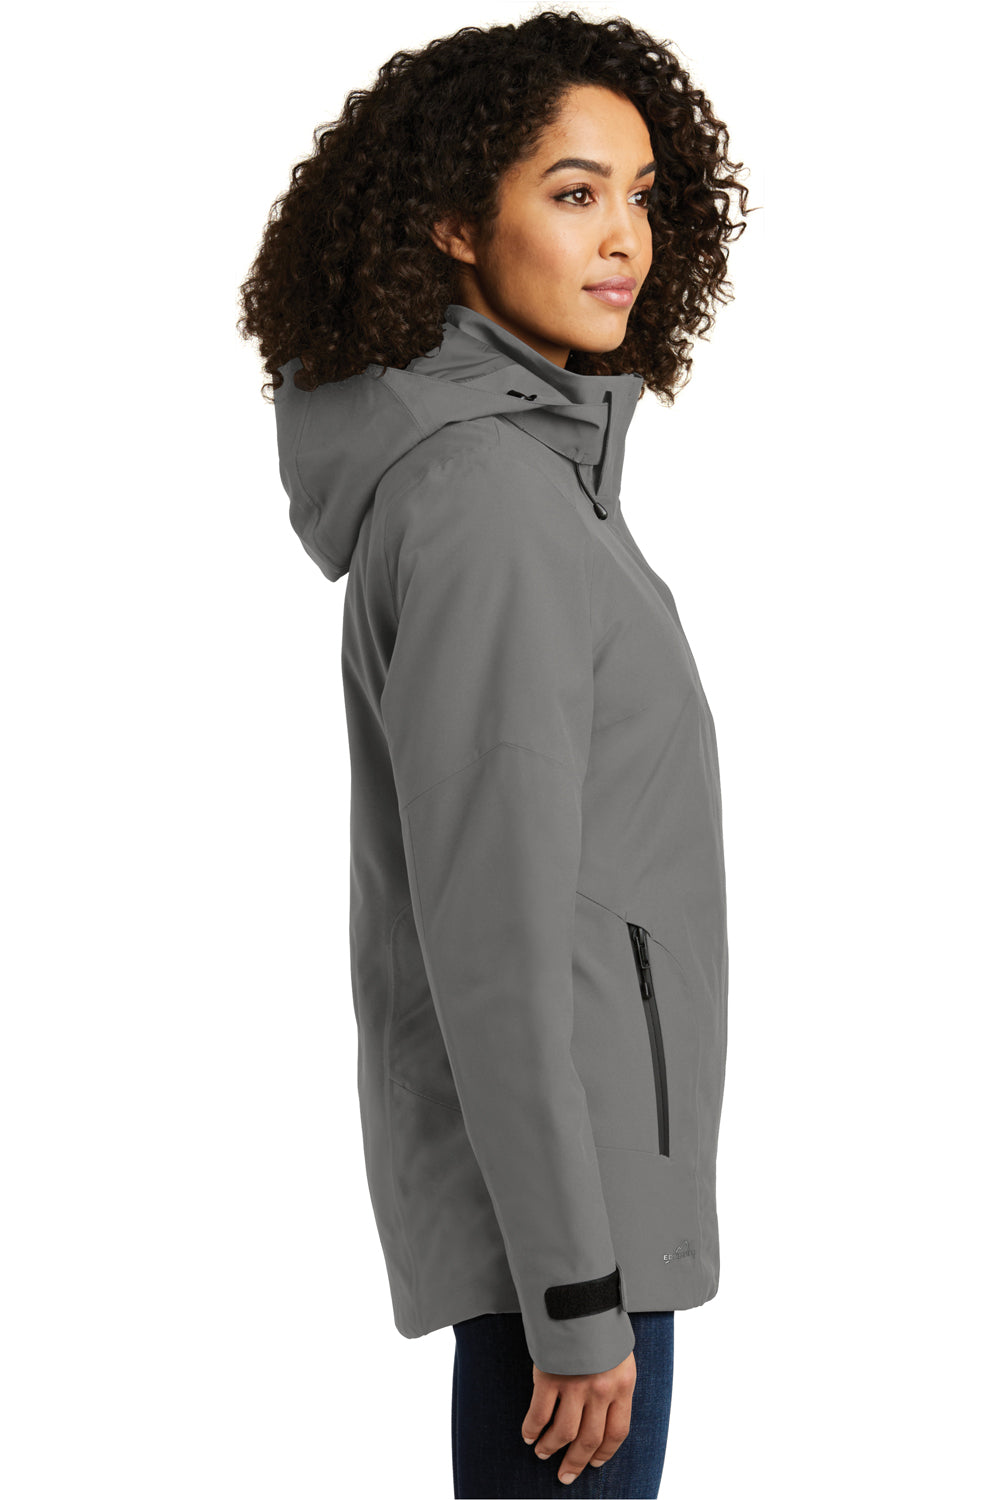 Eddie Bauer EB555 Womens WeatherEdge Plus Waterproof Full Zip Hooded Jacket Metal Grey Model Side